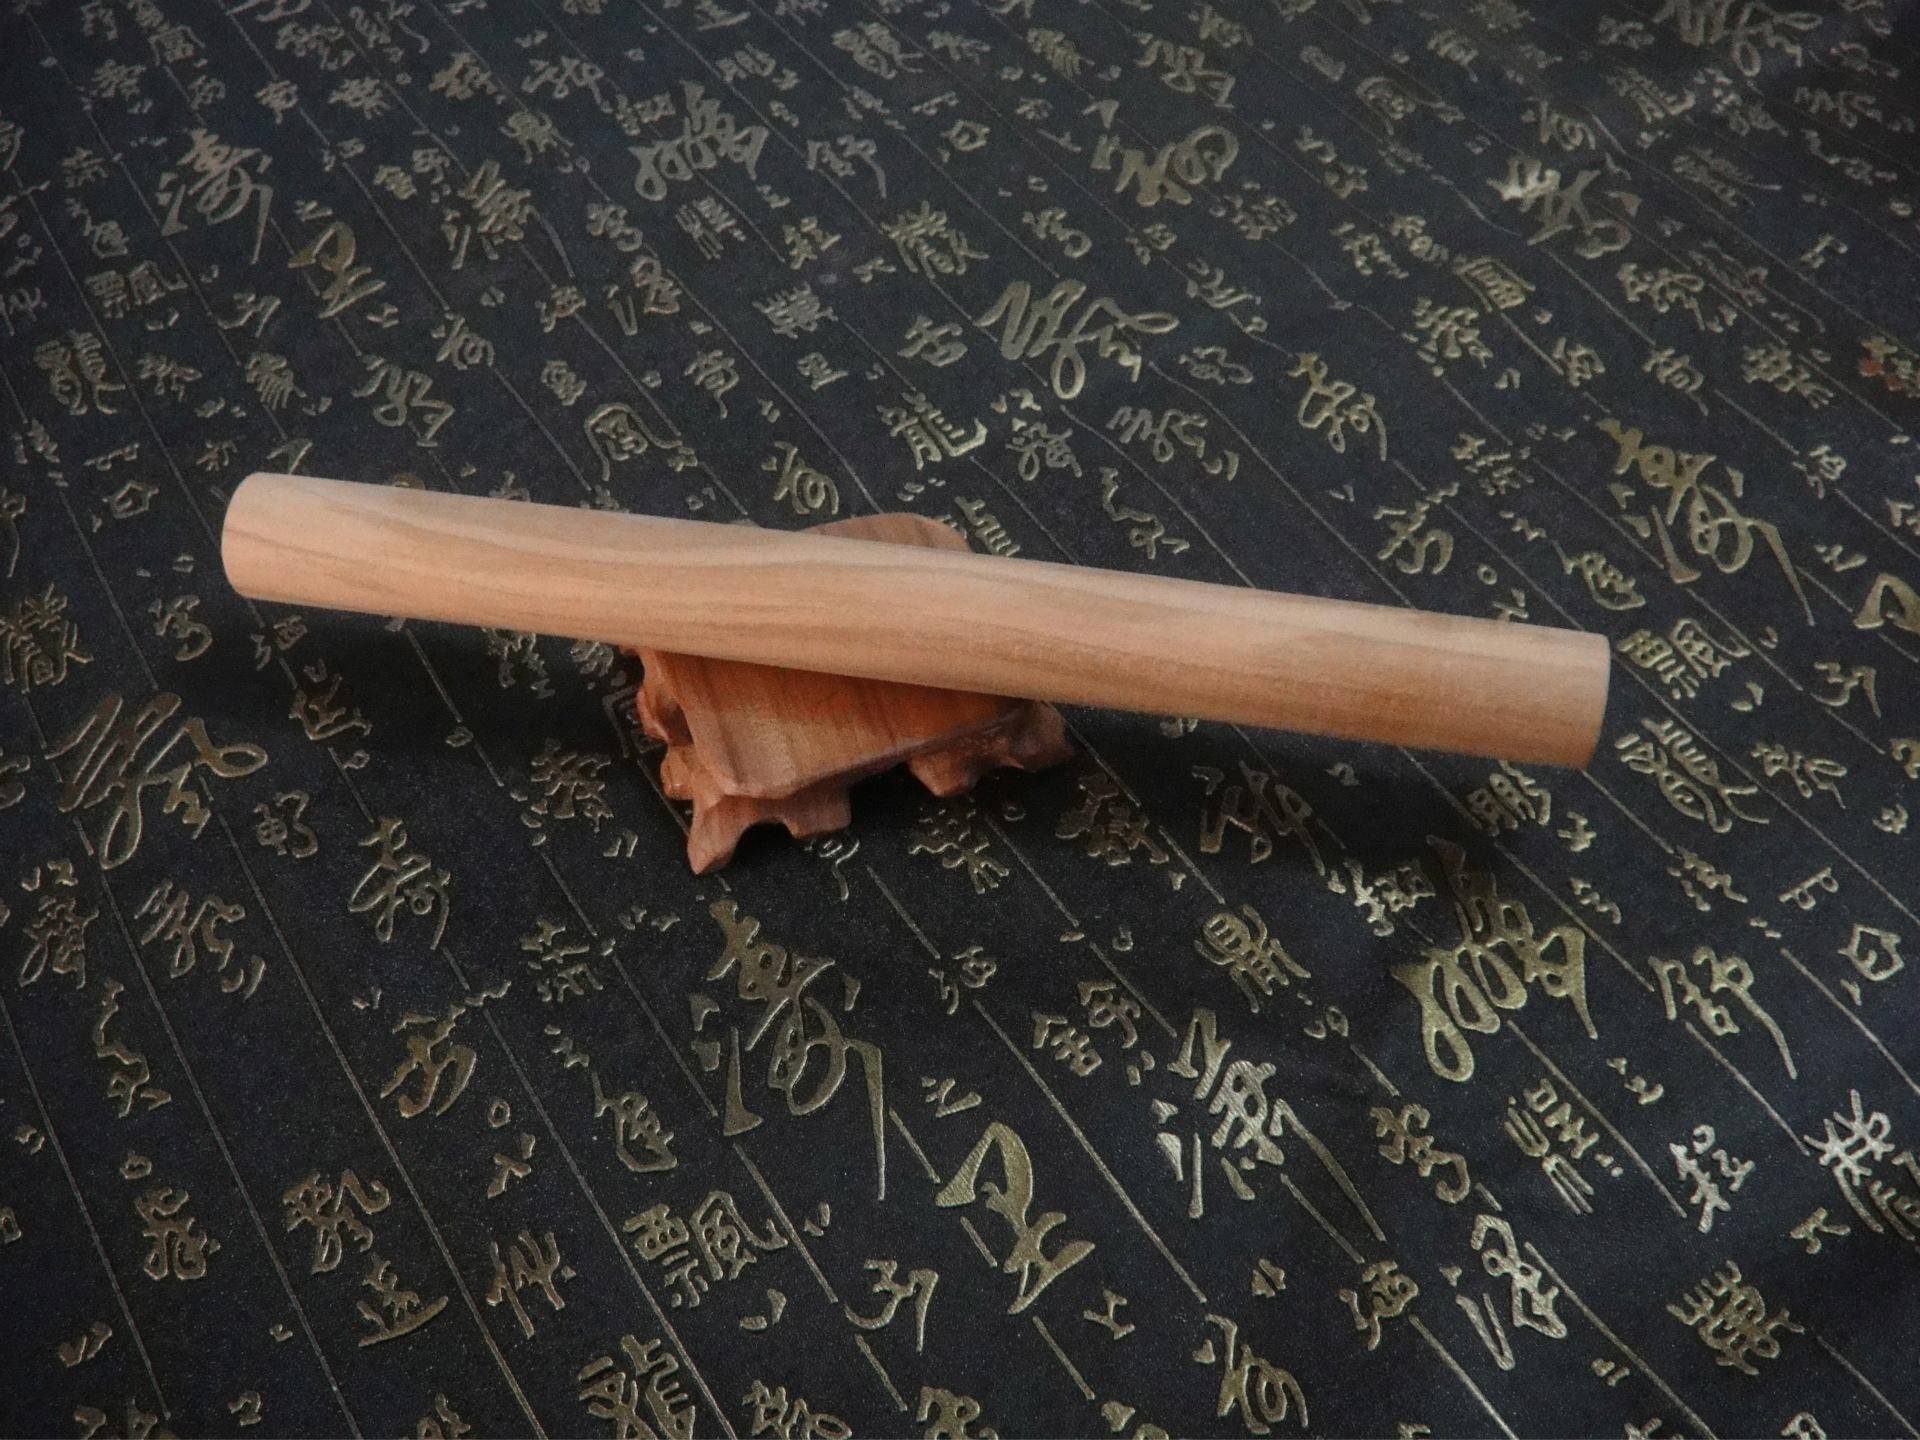 降妖宝杖降妖宝杖 这是沙僧的兵器,材料来源于月宫